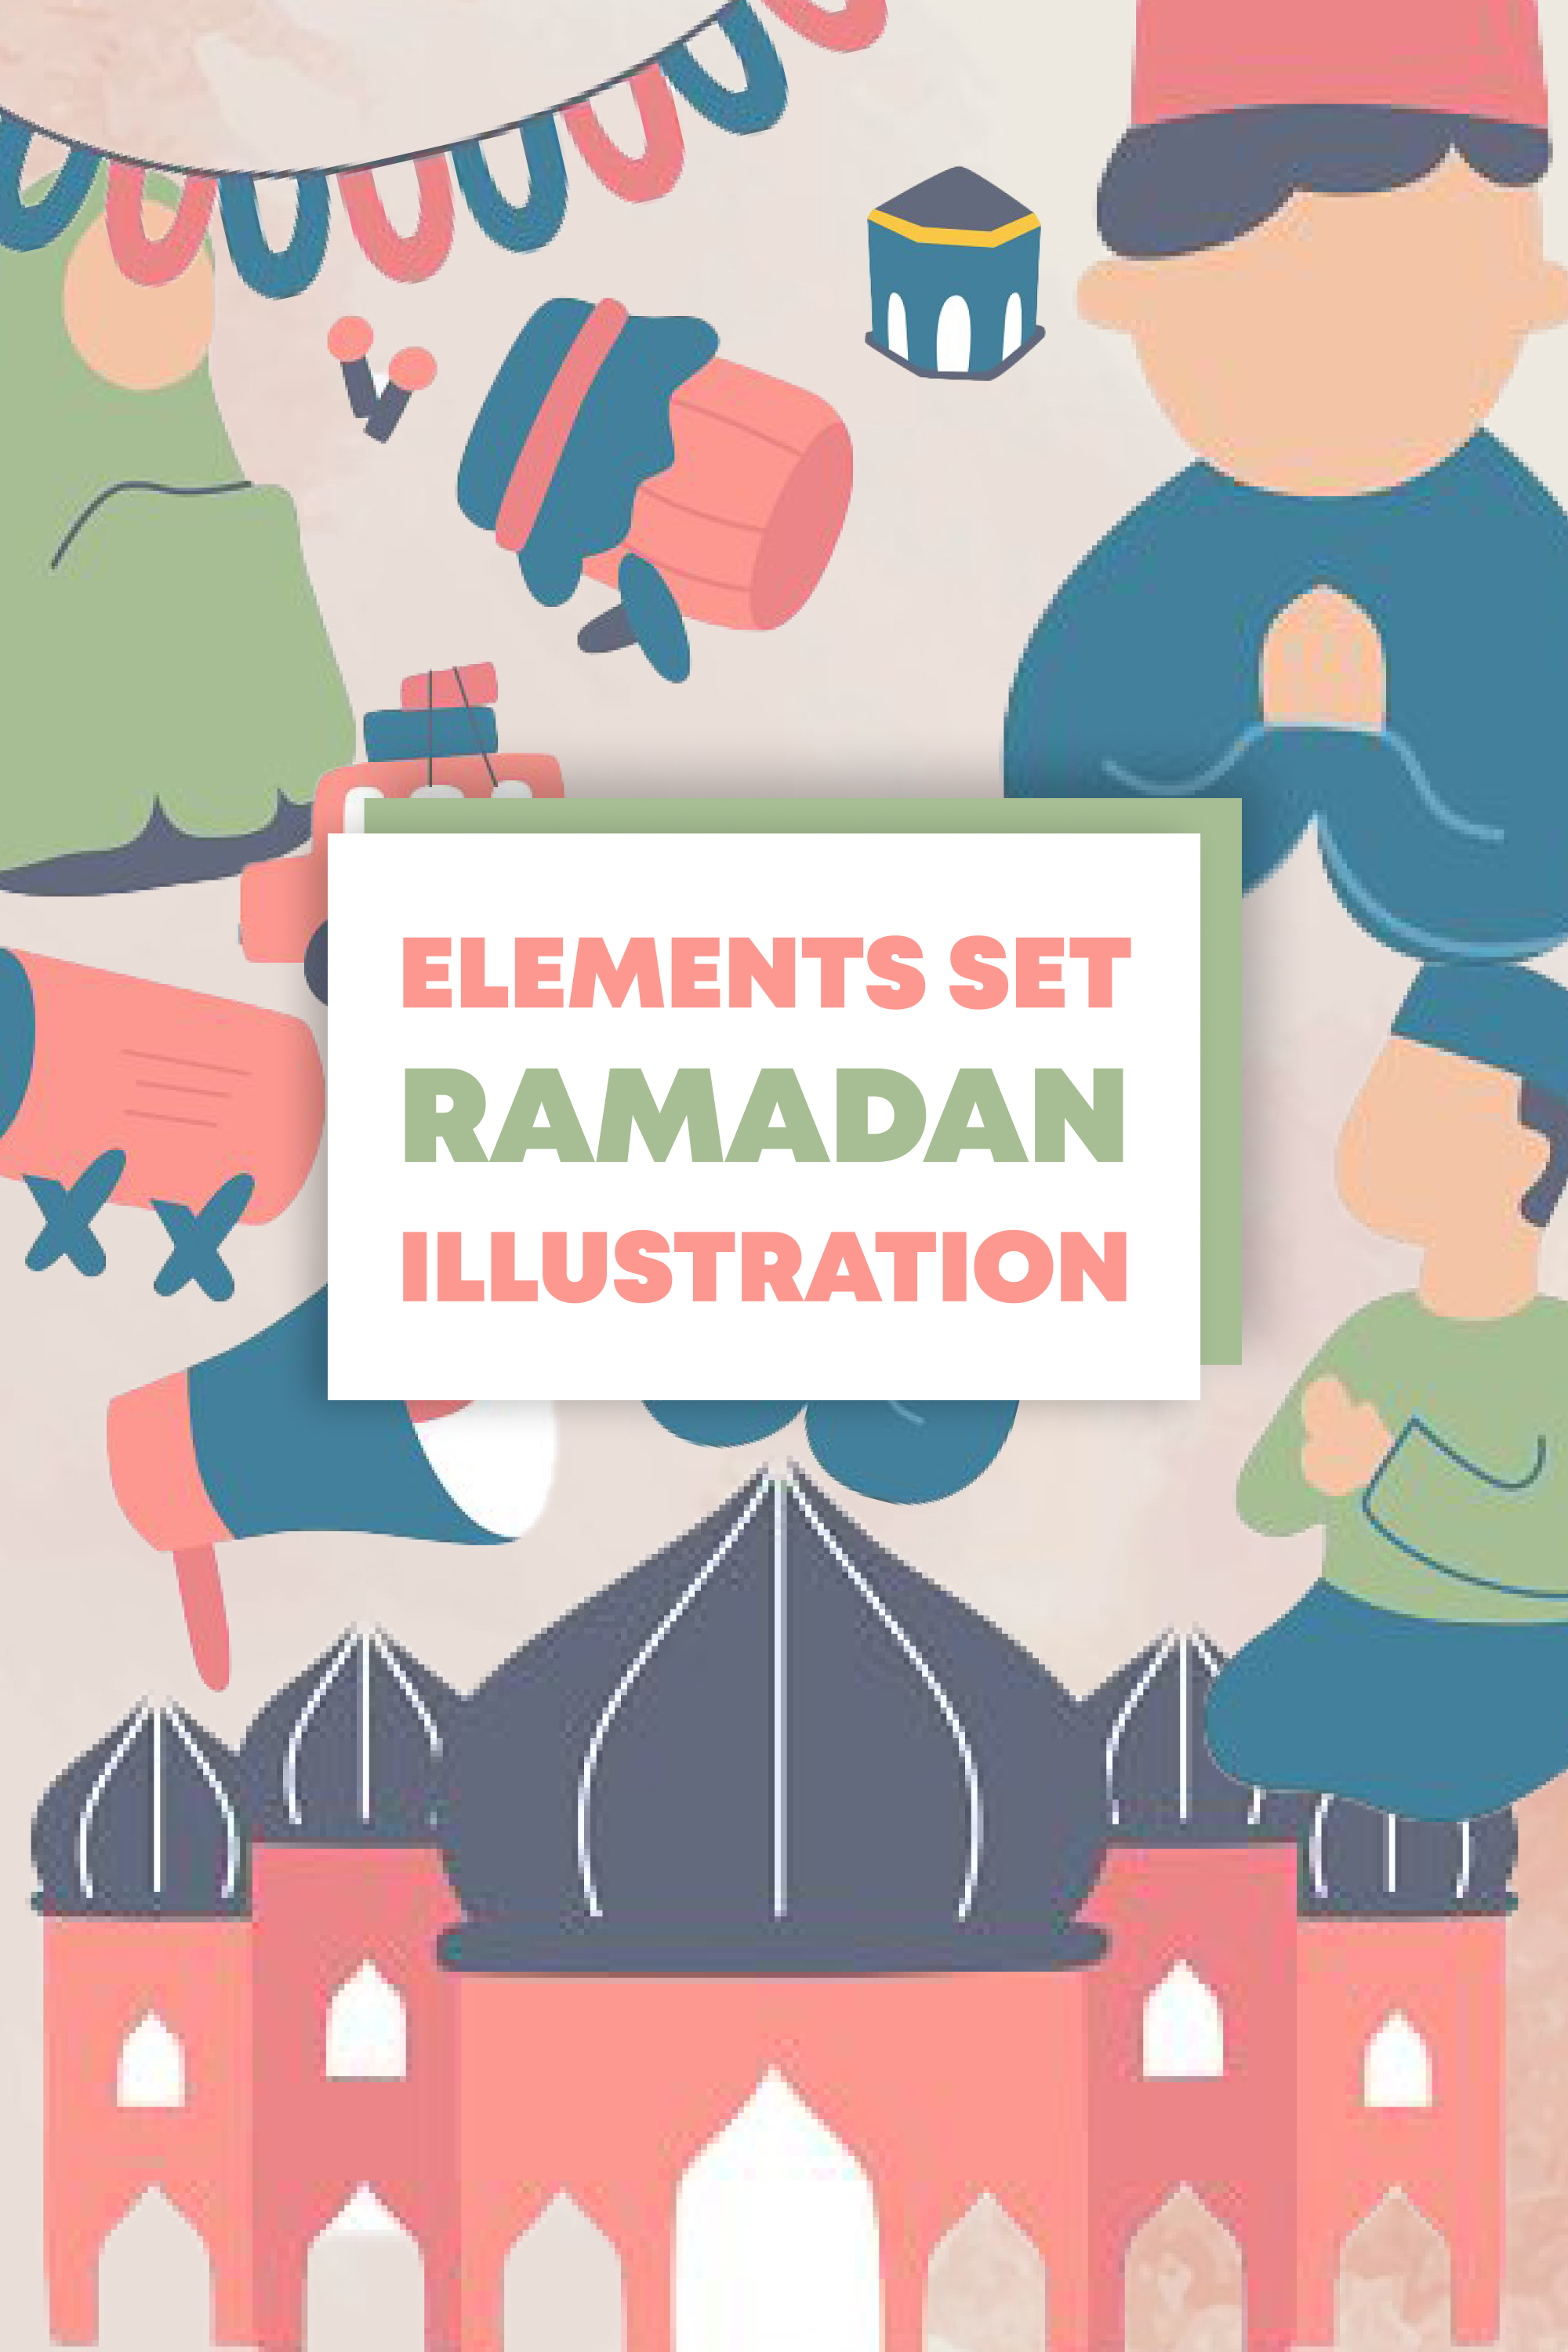 Ramadan elements illustration set of pinterest.